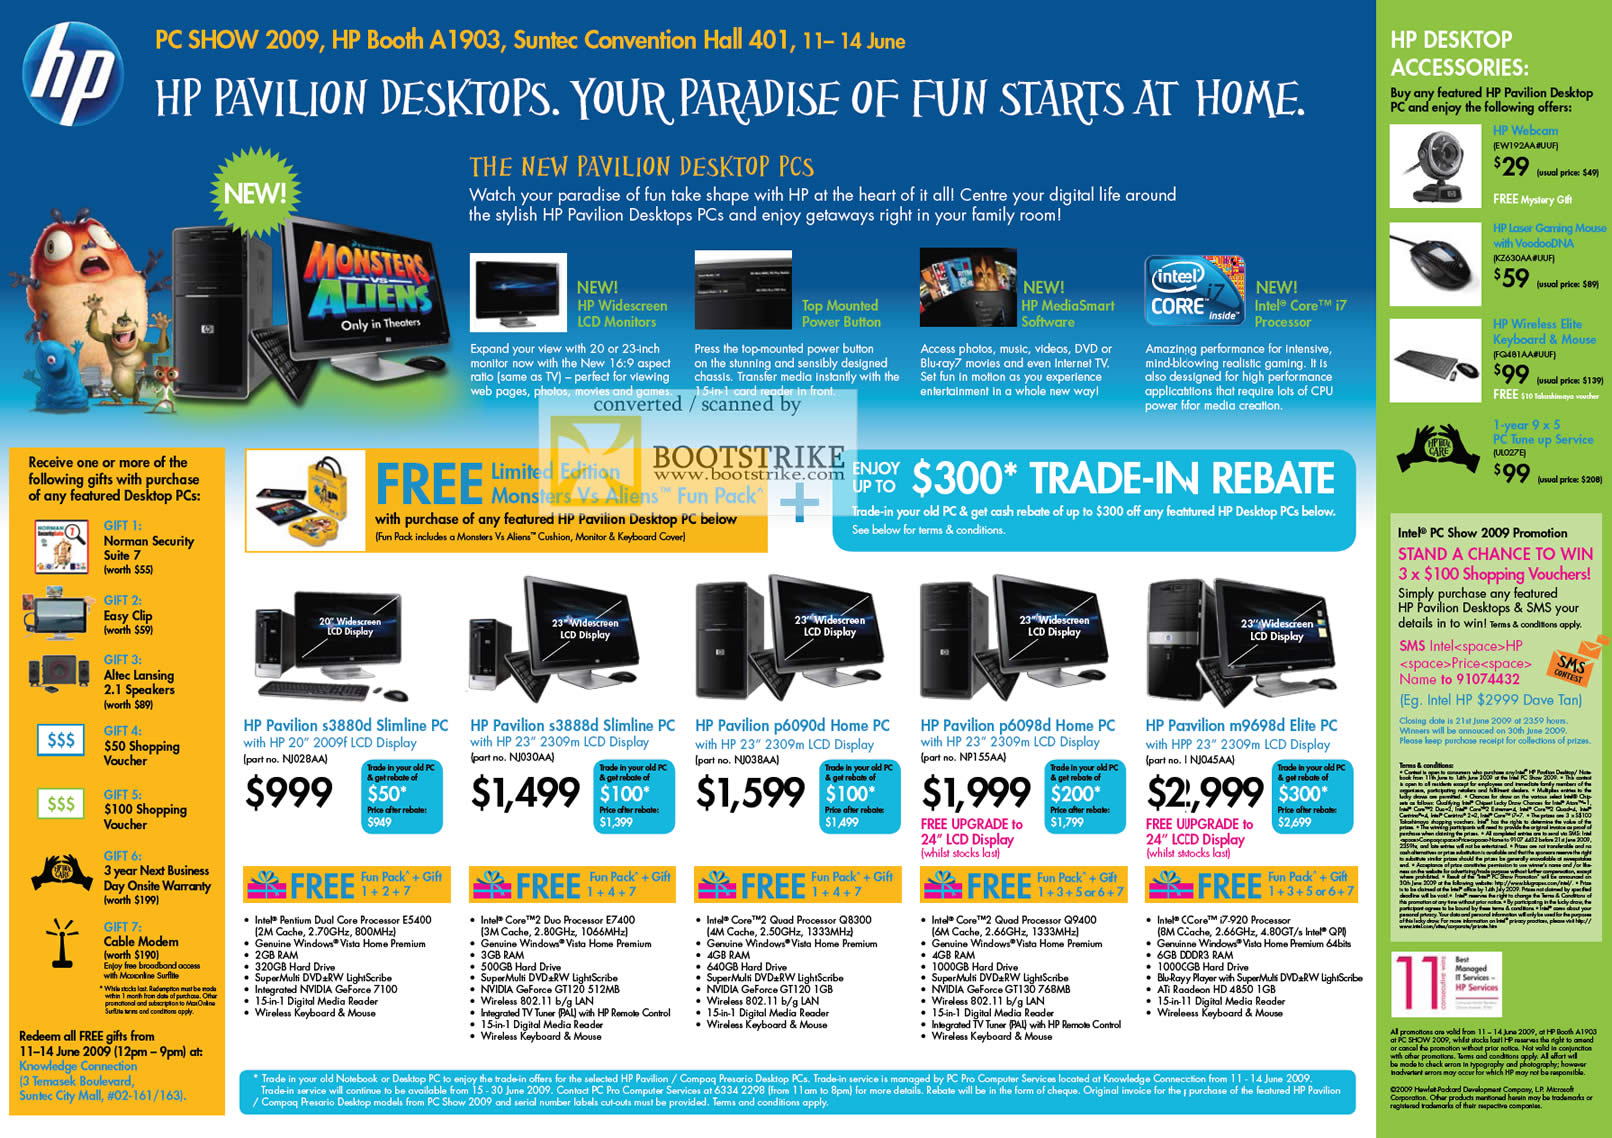 PC Show 2009 price list image brochure of HP Pavilion Desktops S3880d Slimline S3888d P6090d P6098d M9698d Elite